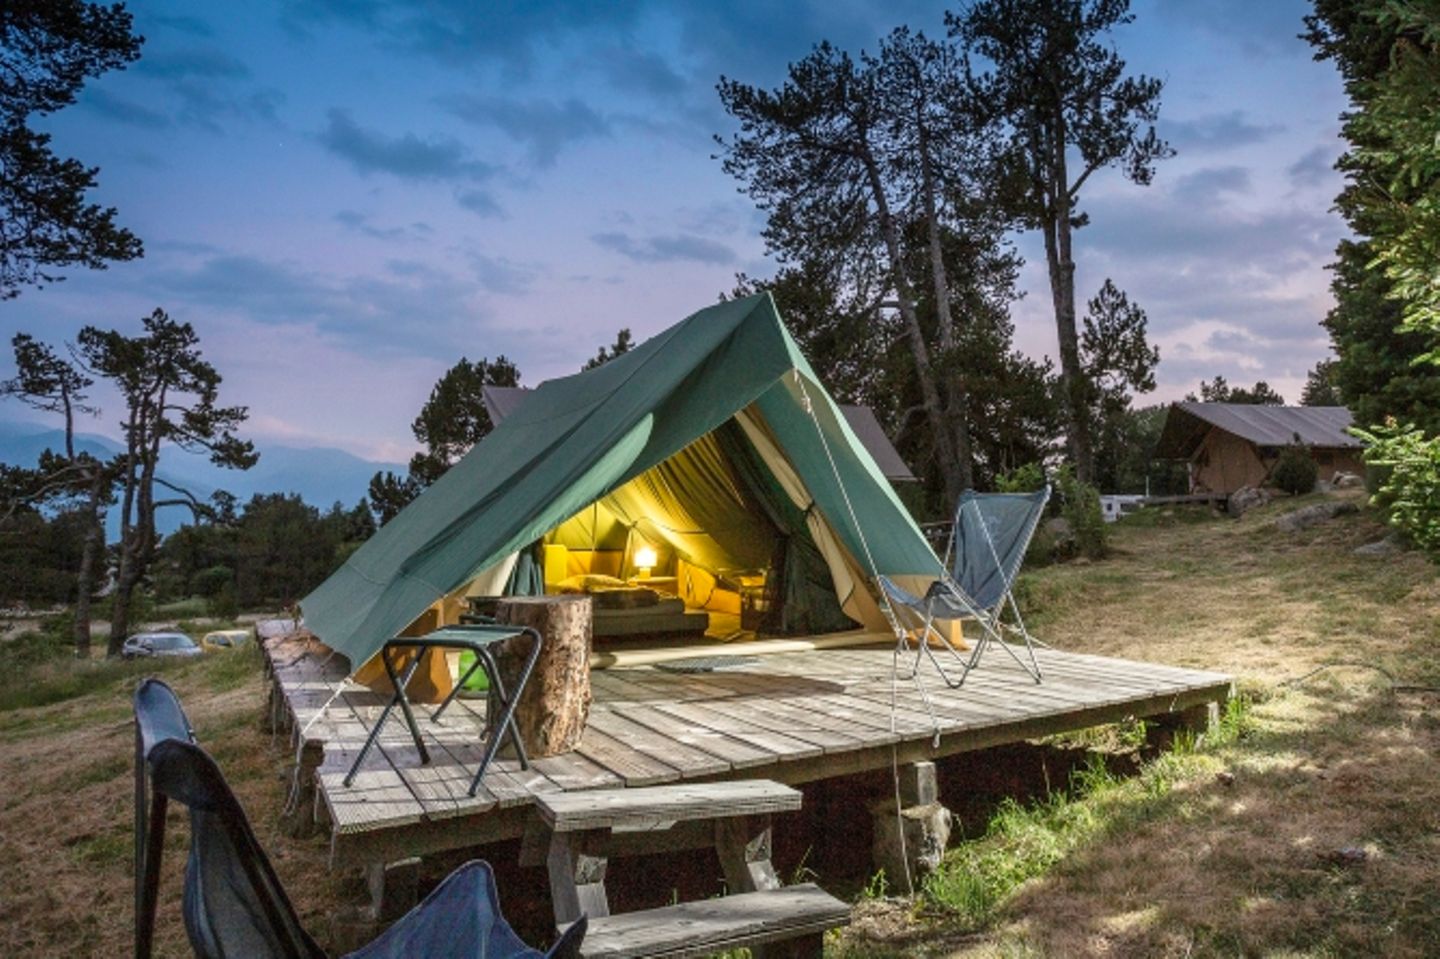 Das "Huttopia"-Camp Font-Romeu ermöglicht Zelt-Feeling und dabei trotzdem weich schlafen. Eine Matratze sorgt für gemütliche Nächte